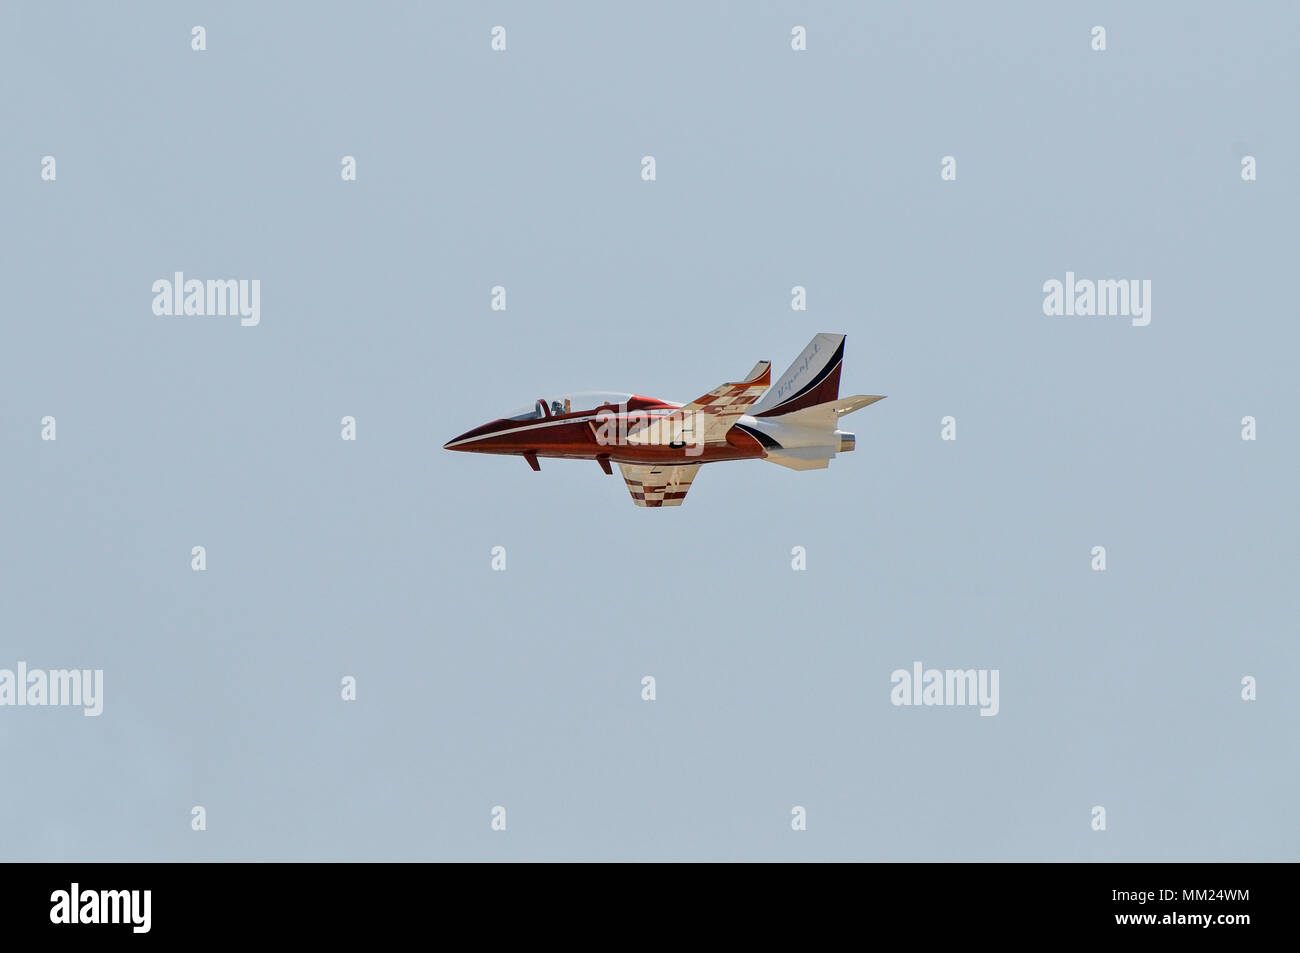 Aeromodelismo de aviones fotografías e imágenes de alta resolución - Página  2 - Alamy